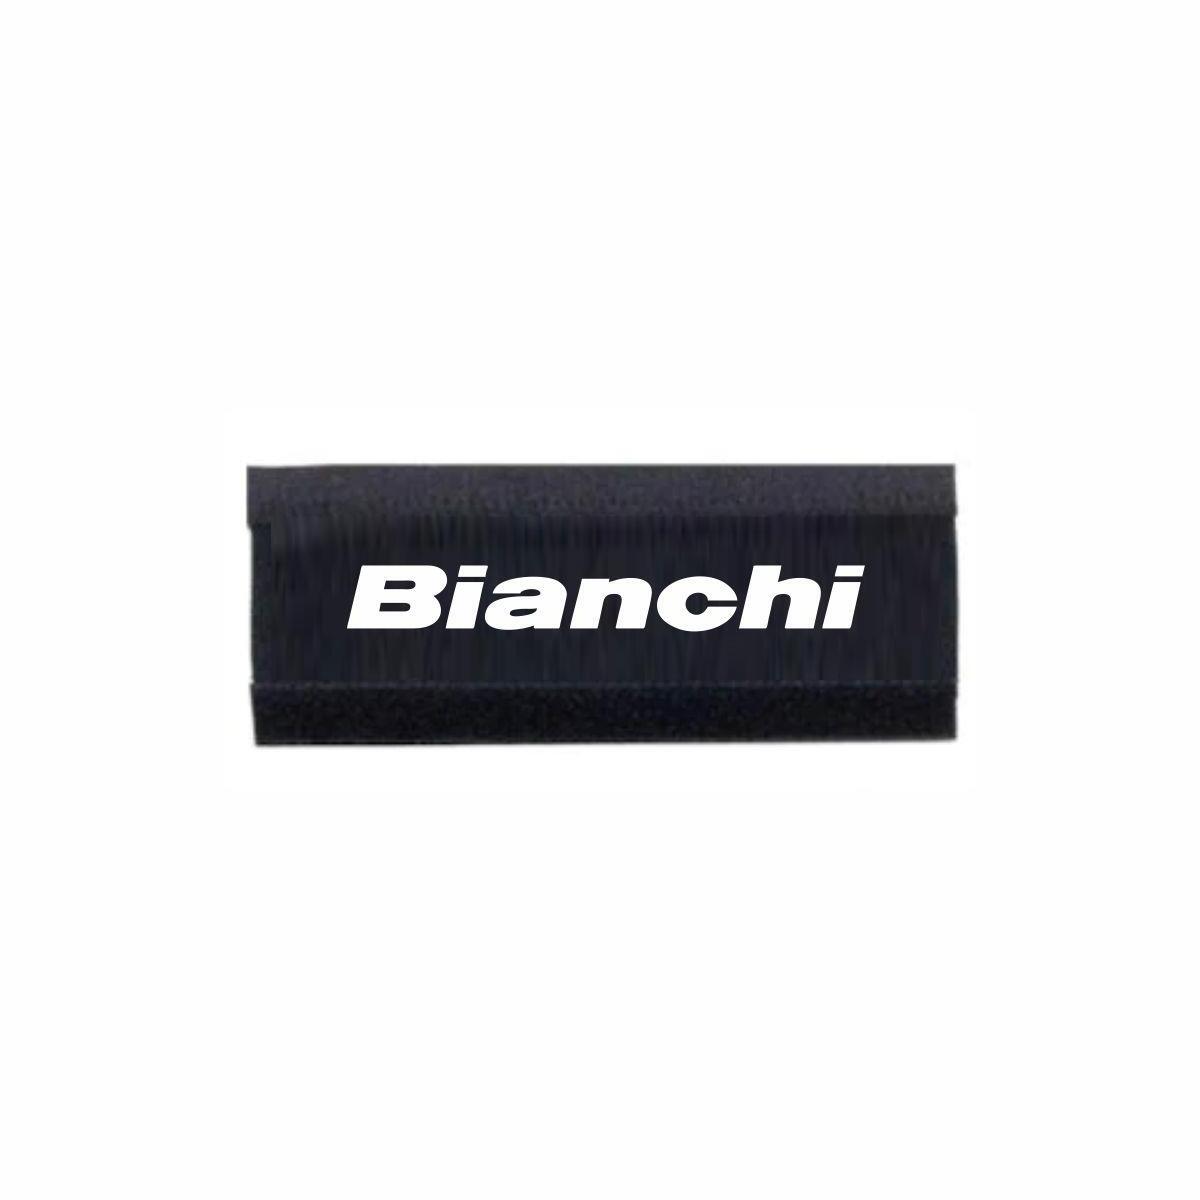 Bianchi Bisiklet Kadro Koruyucu Bianchi